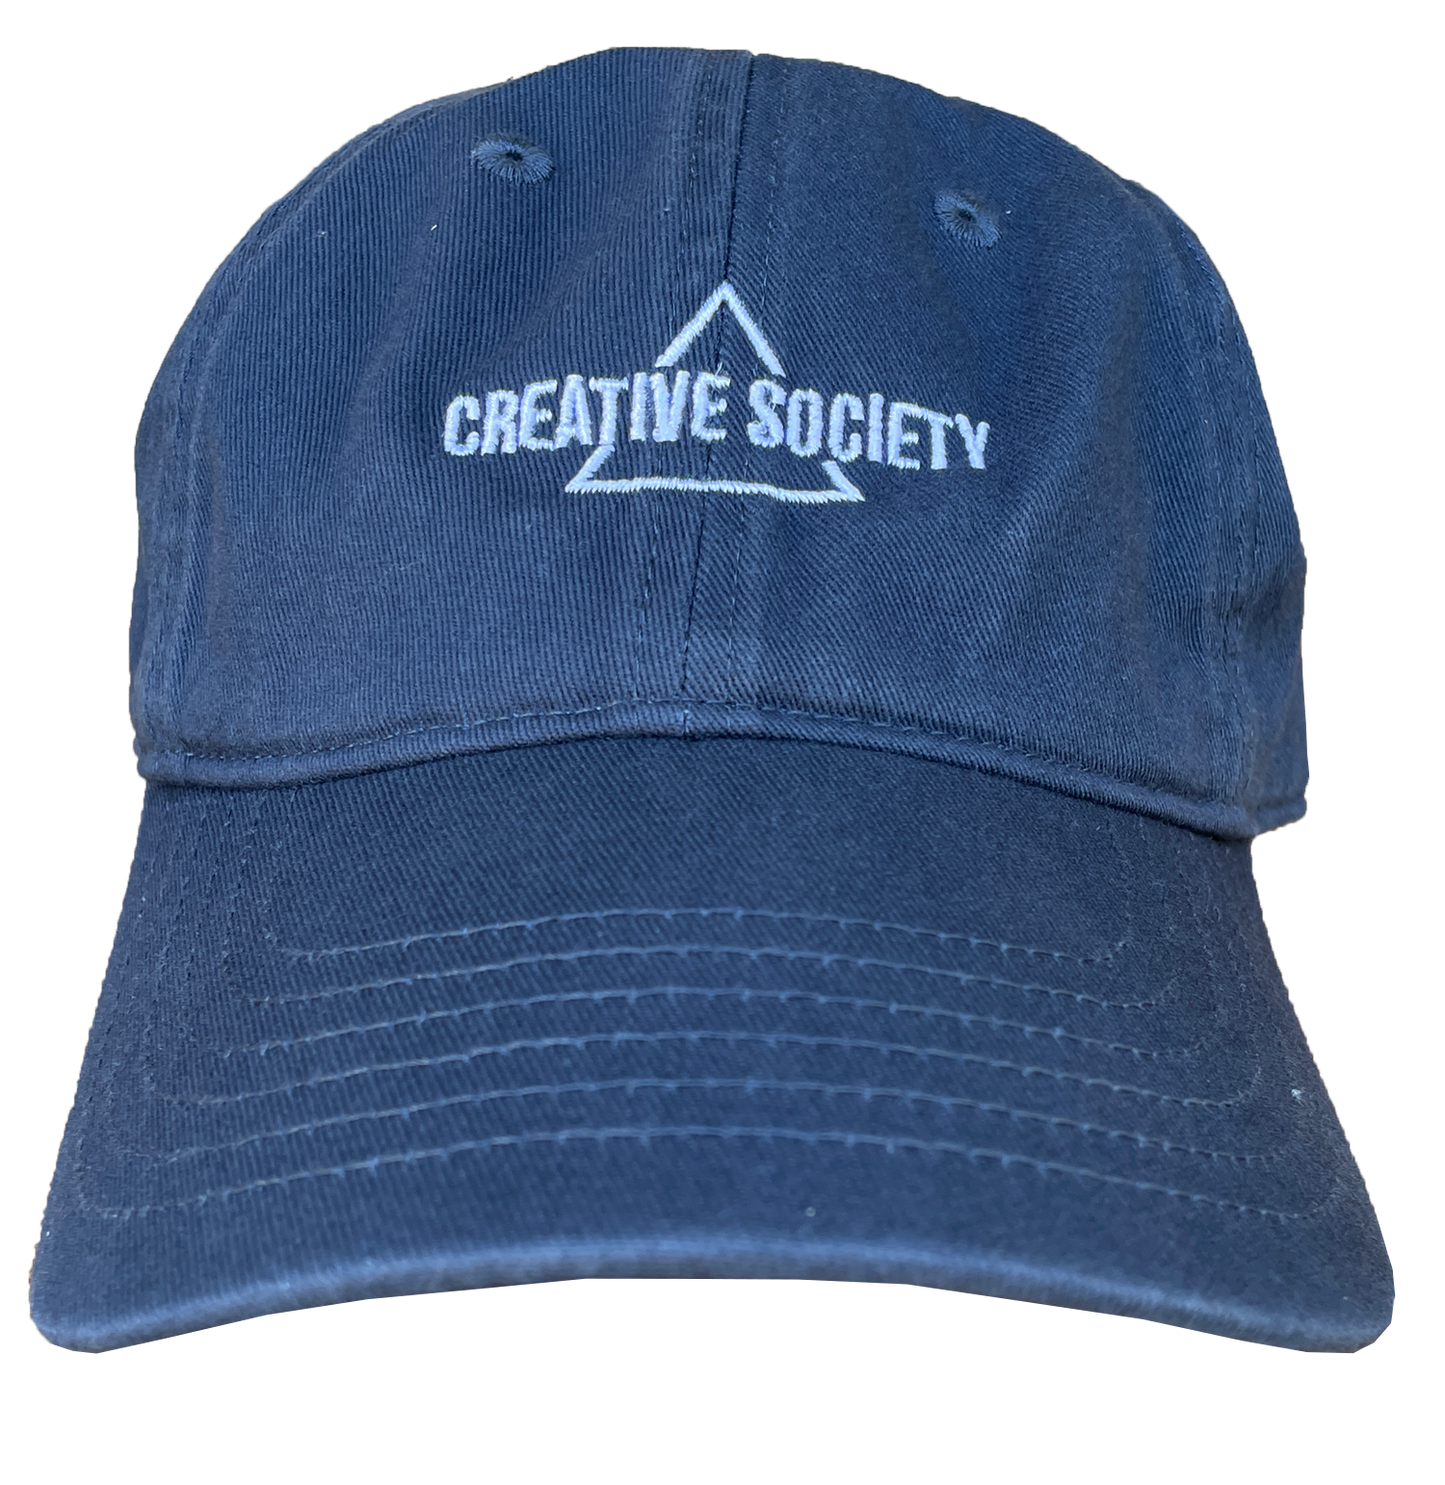 Creative Society - Baseball Style Cap